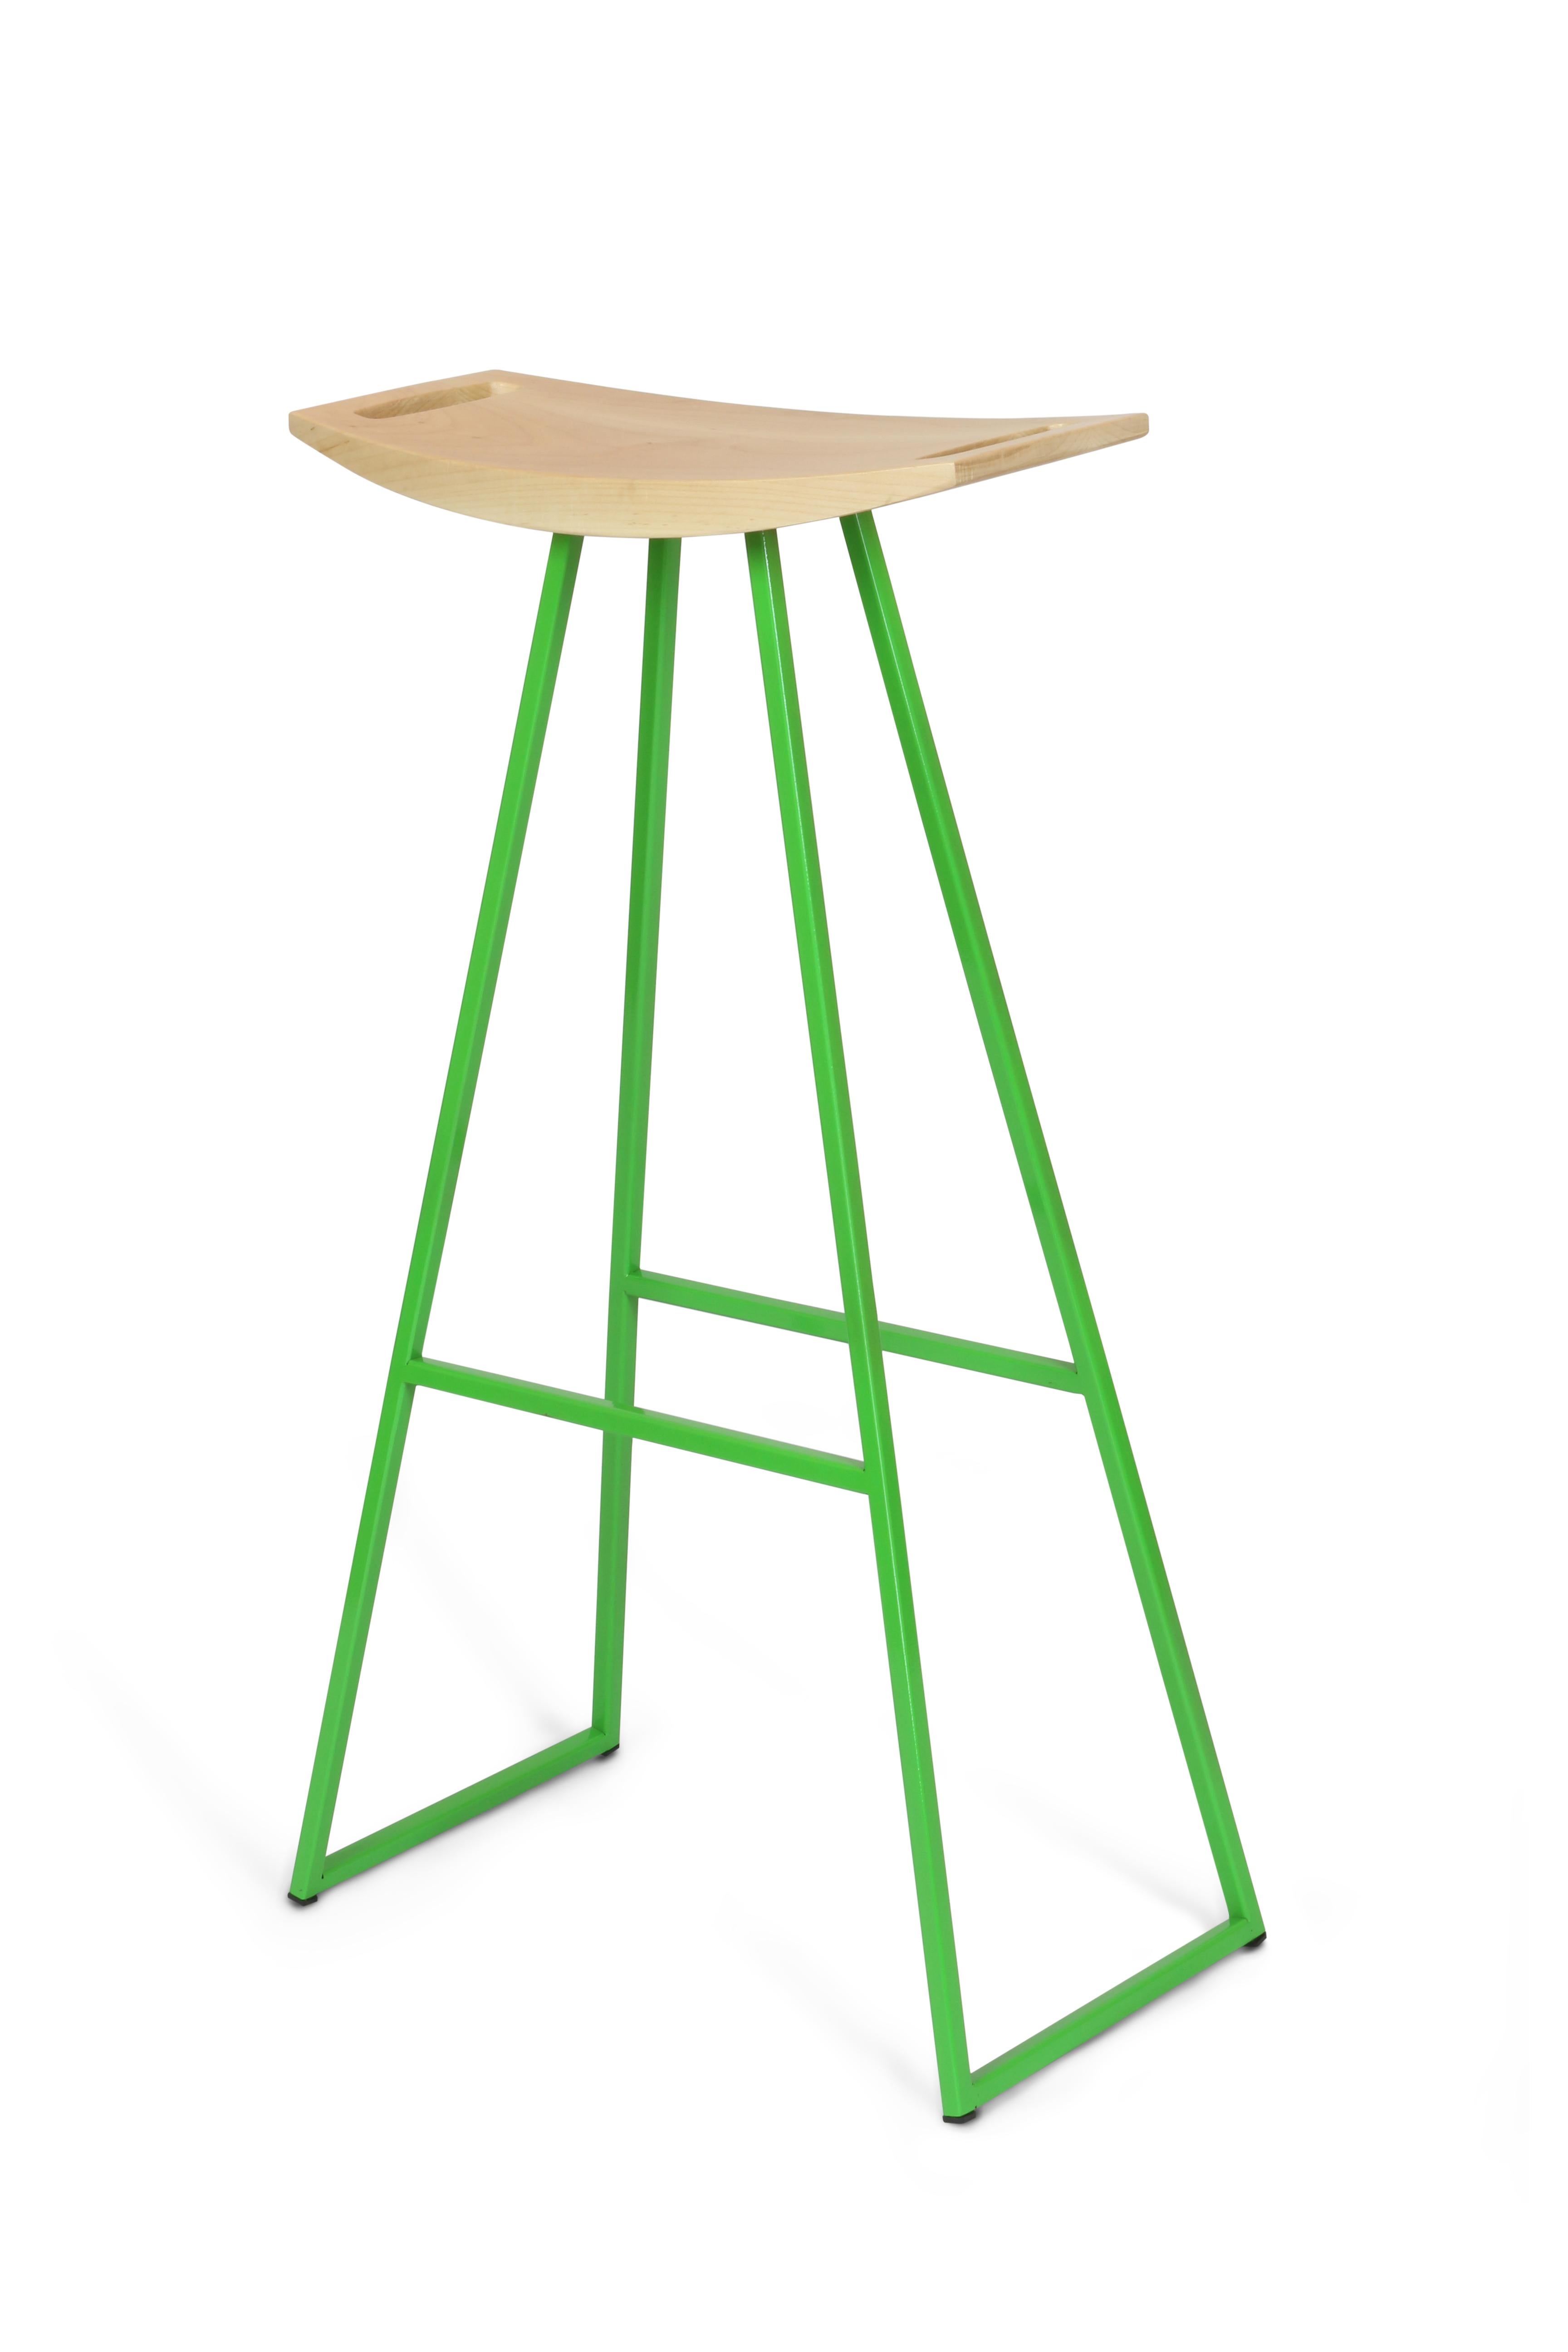 thin green stool